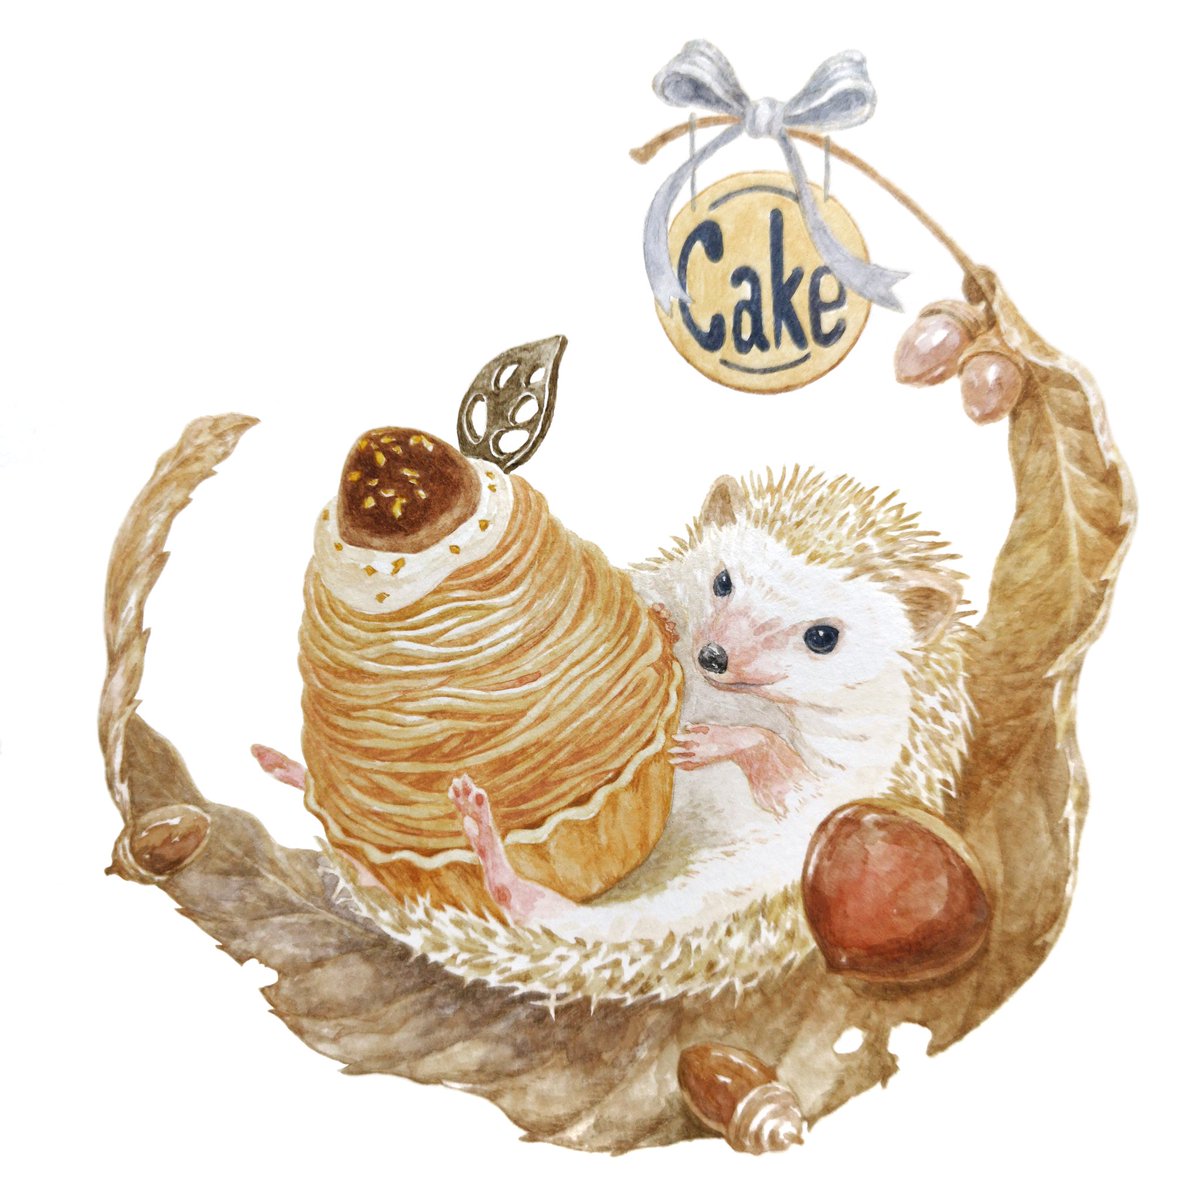 Hirotoshi Kanou 在 Twitter 上 森の中のケーキ屋さん モンブランケーキとハリネズミ 今日から９月 実りの秋がやってきますね ハリネズミ モンブラン 秋のスイーツ 動物イラスト 食べ物イラスト Animalillustration Foodillustration T Co